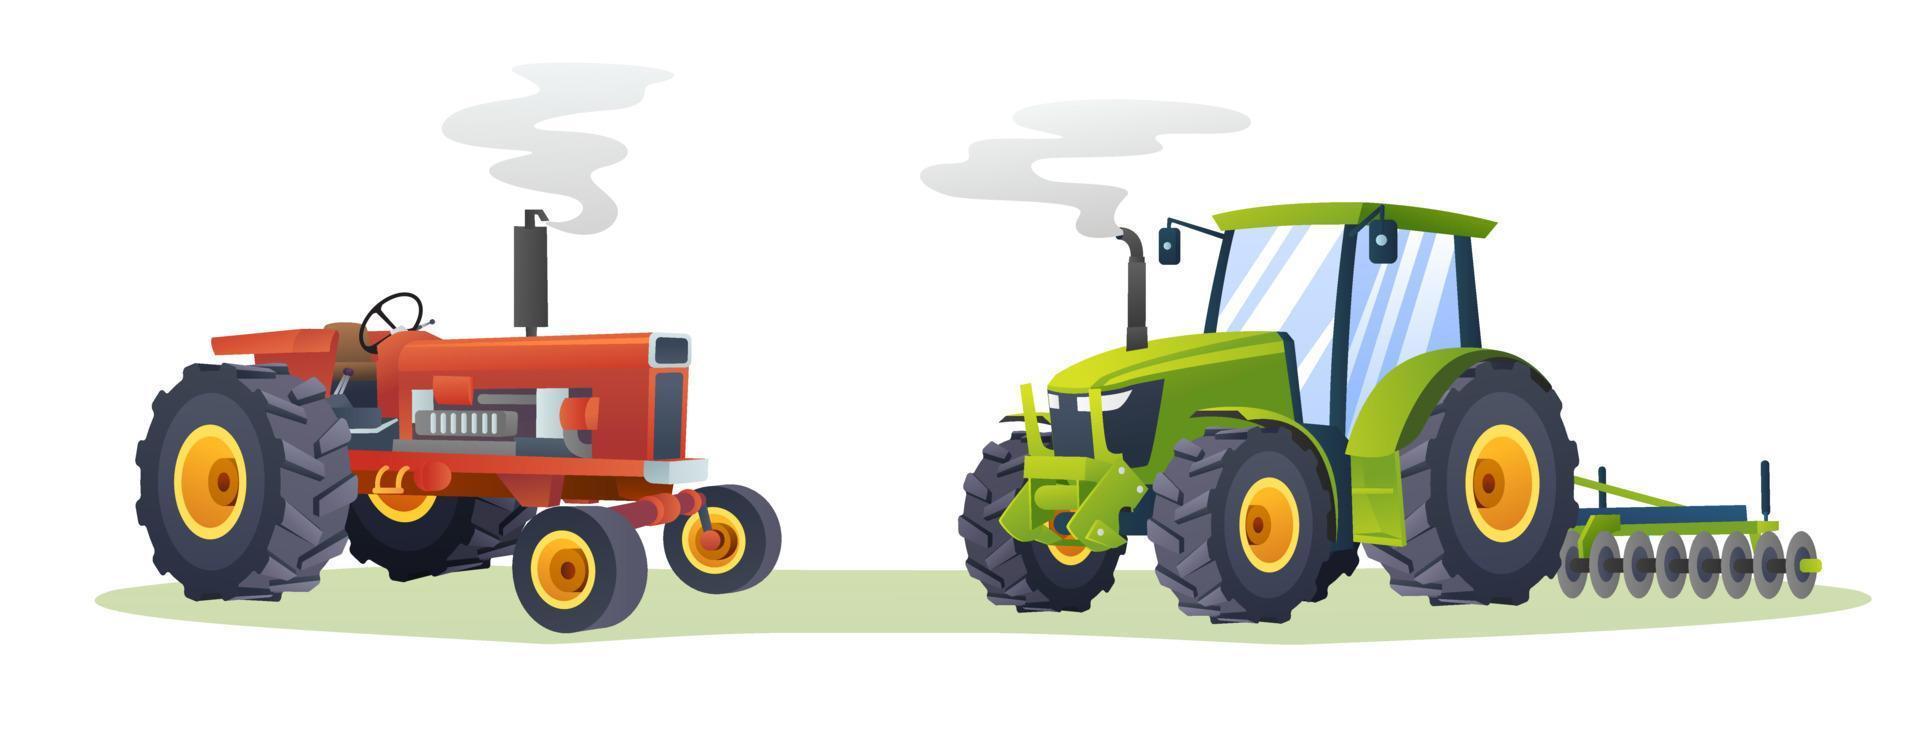 illustrazione isolata raccolta di trattori agricoli vettore